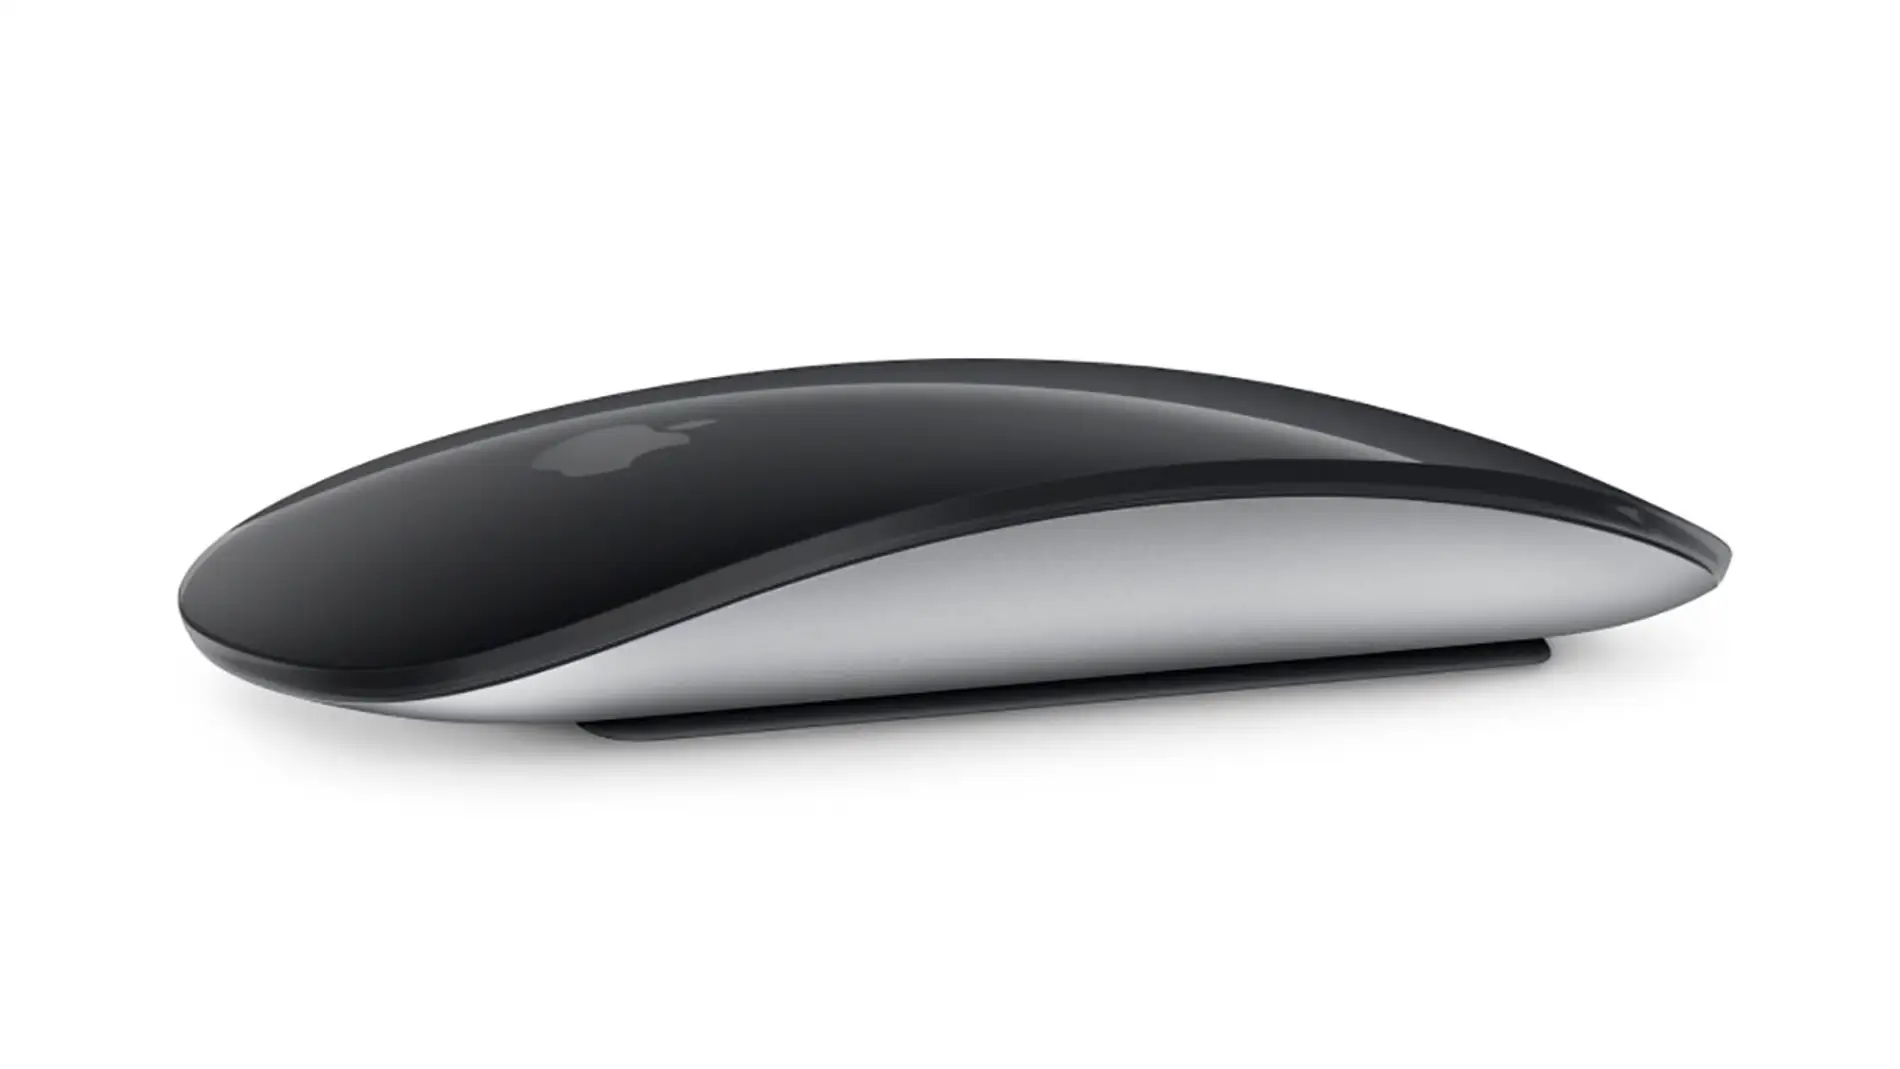 ¿En qué se diferencia el nuevo Magic Mouse que ha lanzado Apple?